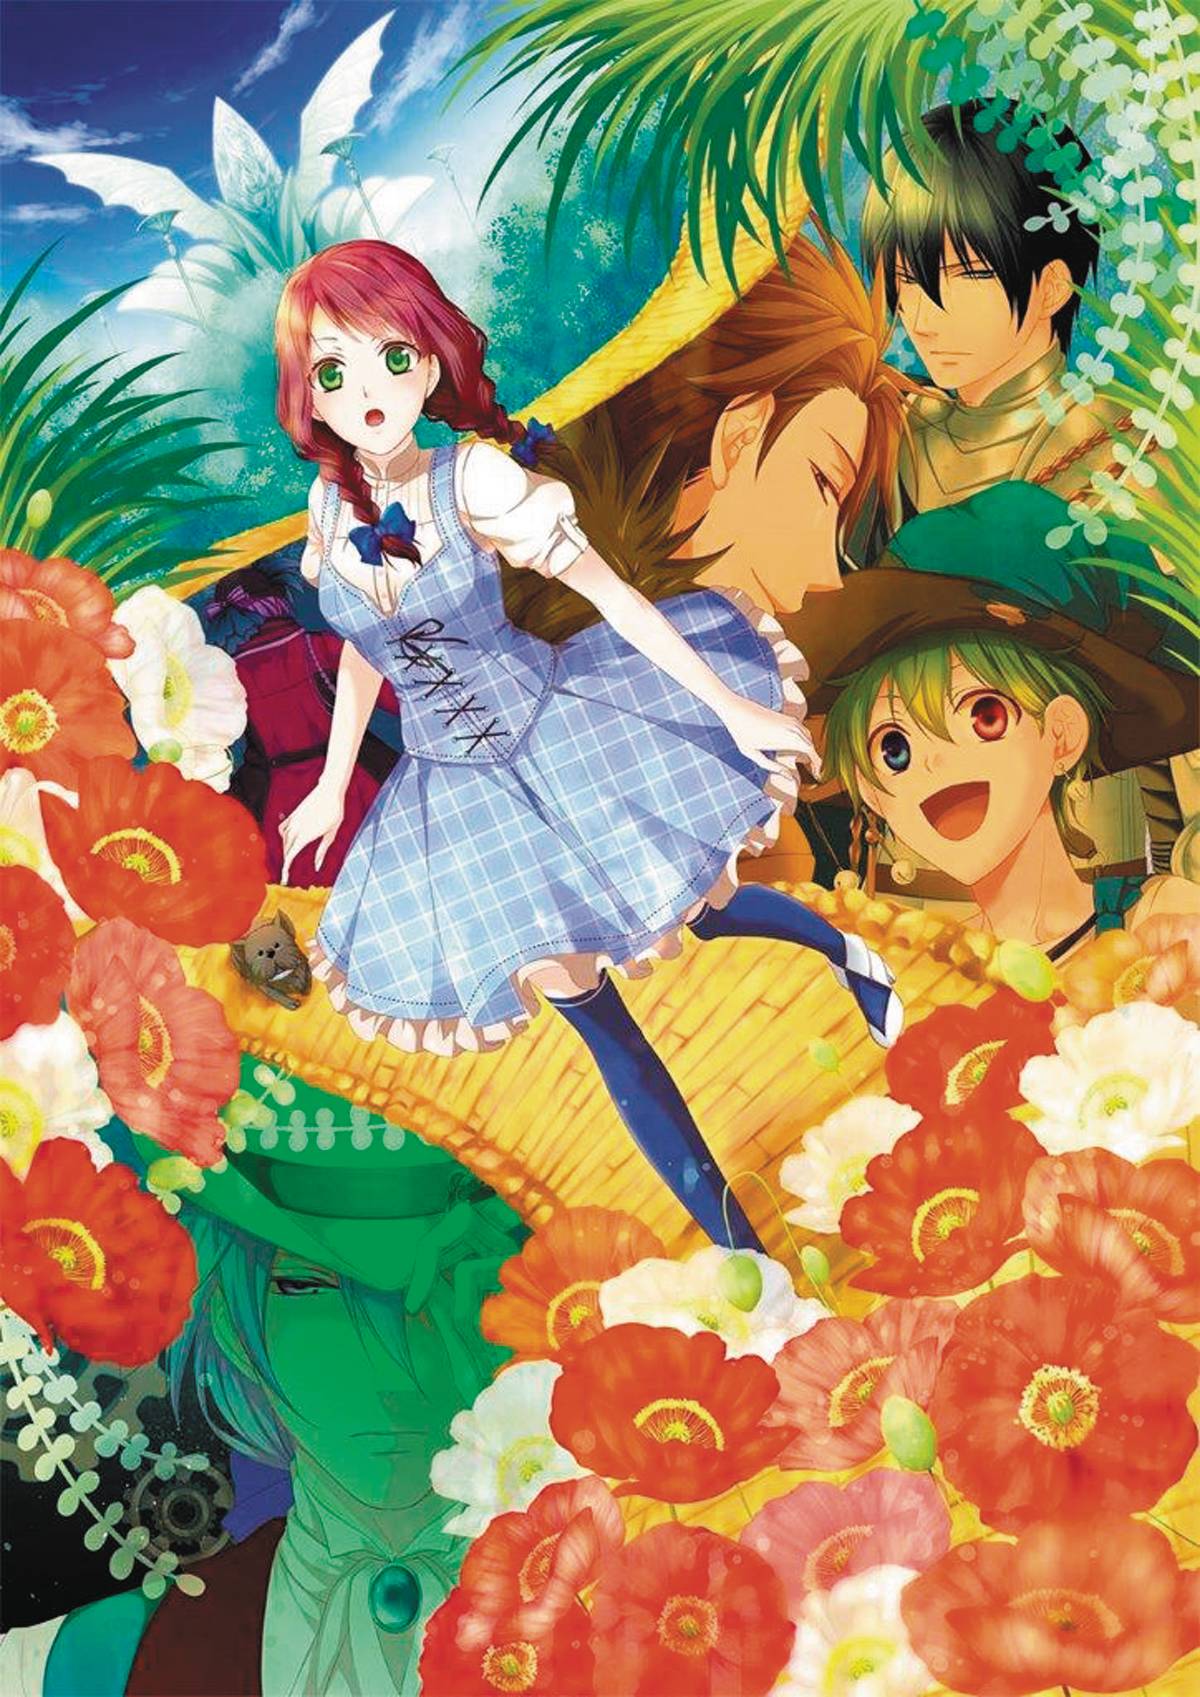 Captive Hearts of Oz Manga Volume 2